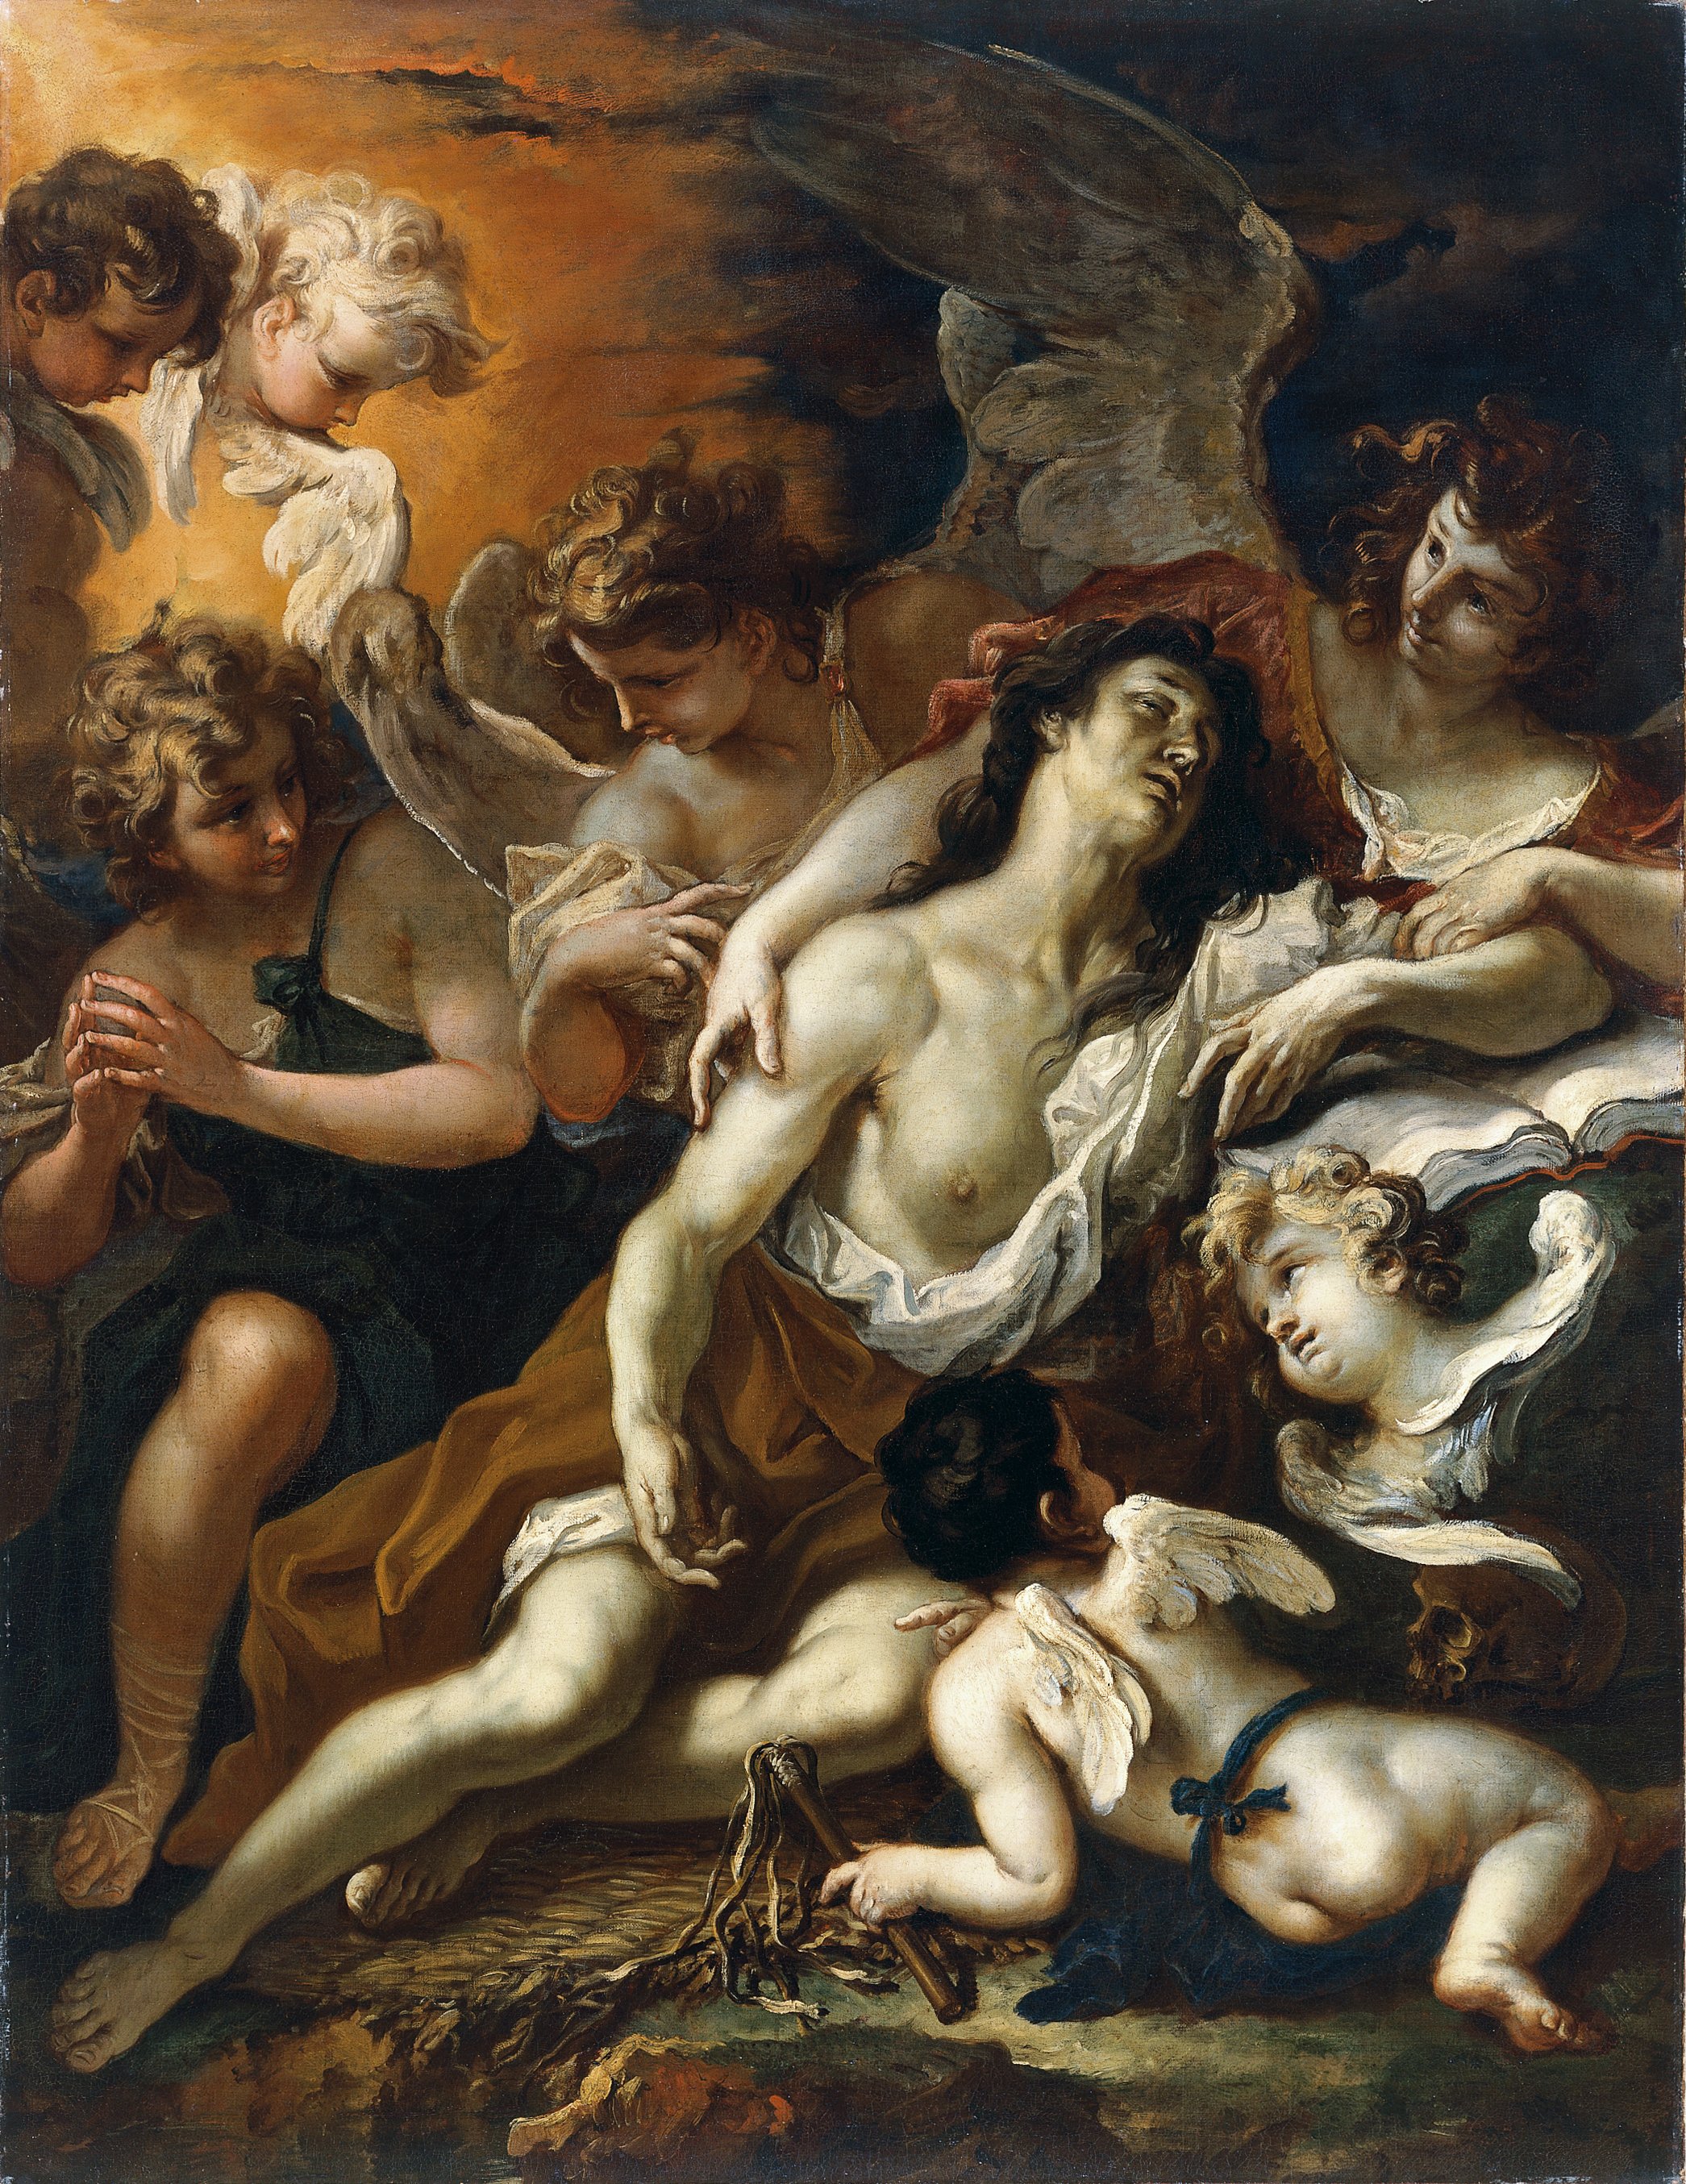 Mary Magdalen conforted by Angels. La Magdalena confortada por ángeles, c. 1694